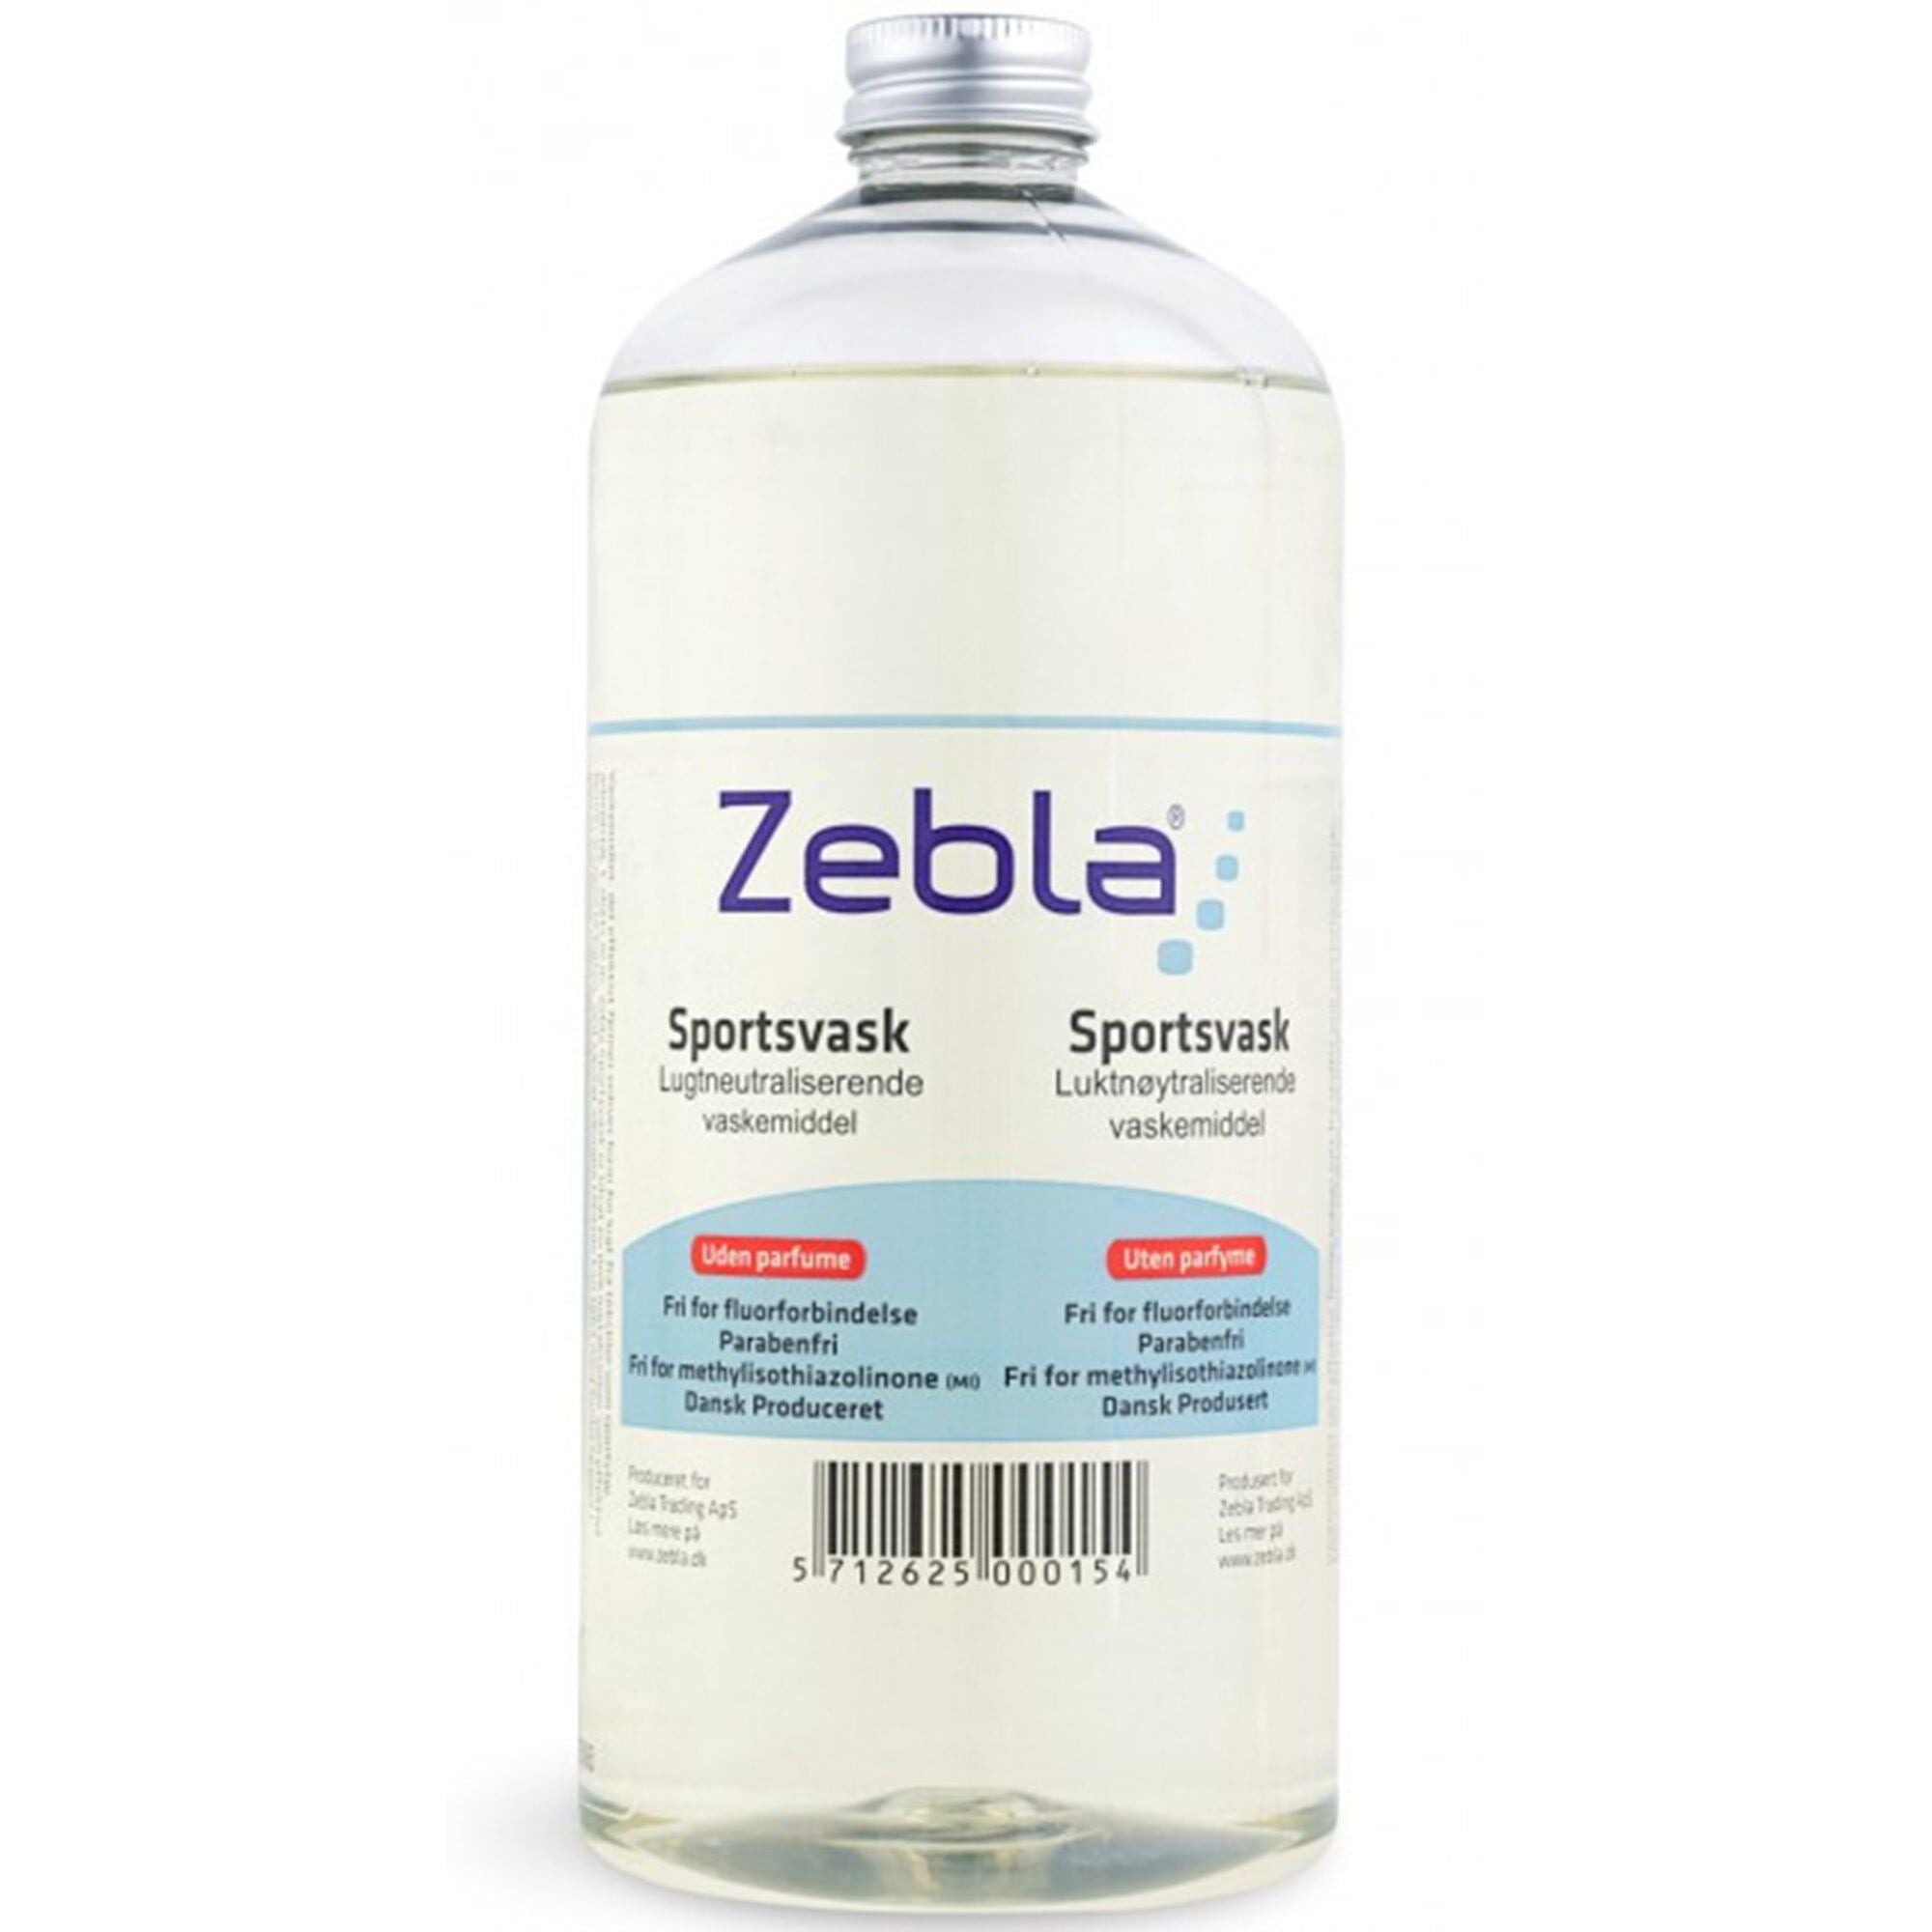 Zebla Odor Neutralizing Detergent (1 liter)